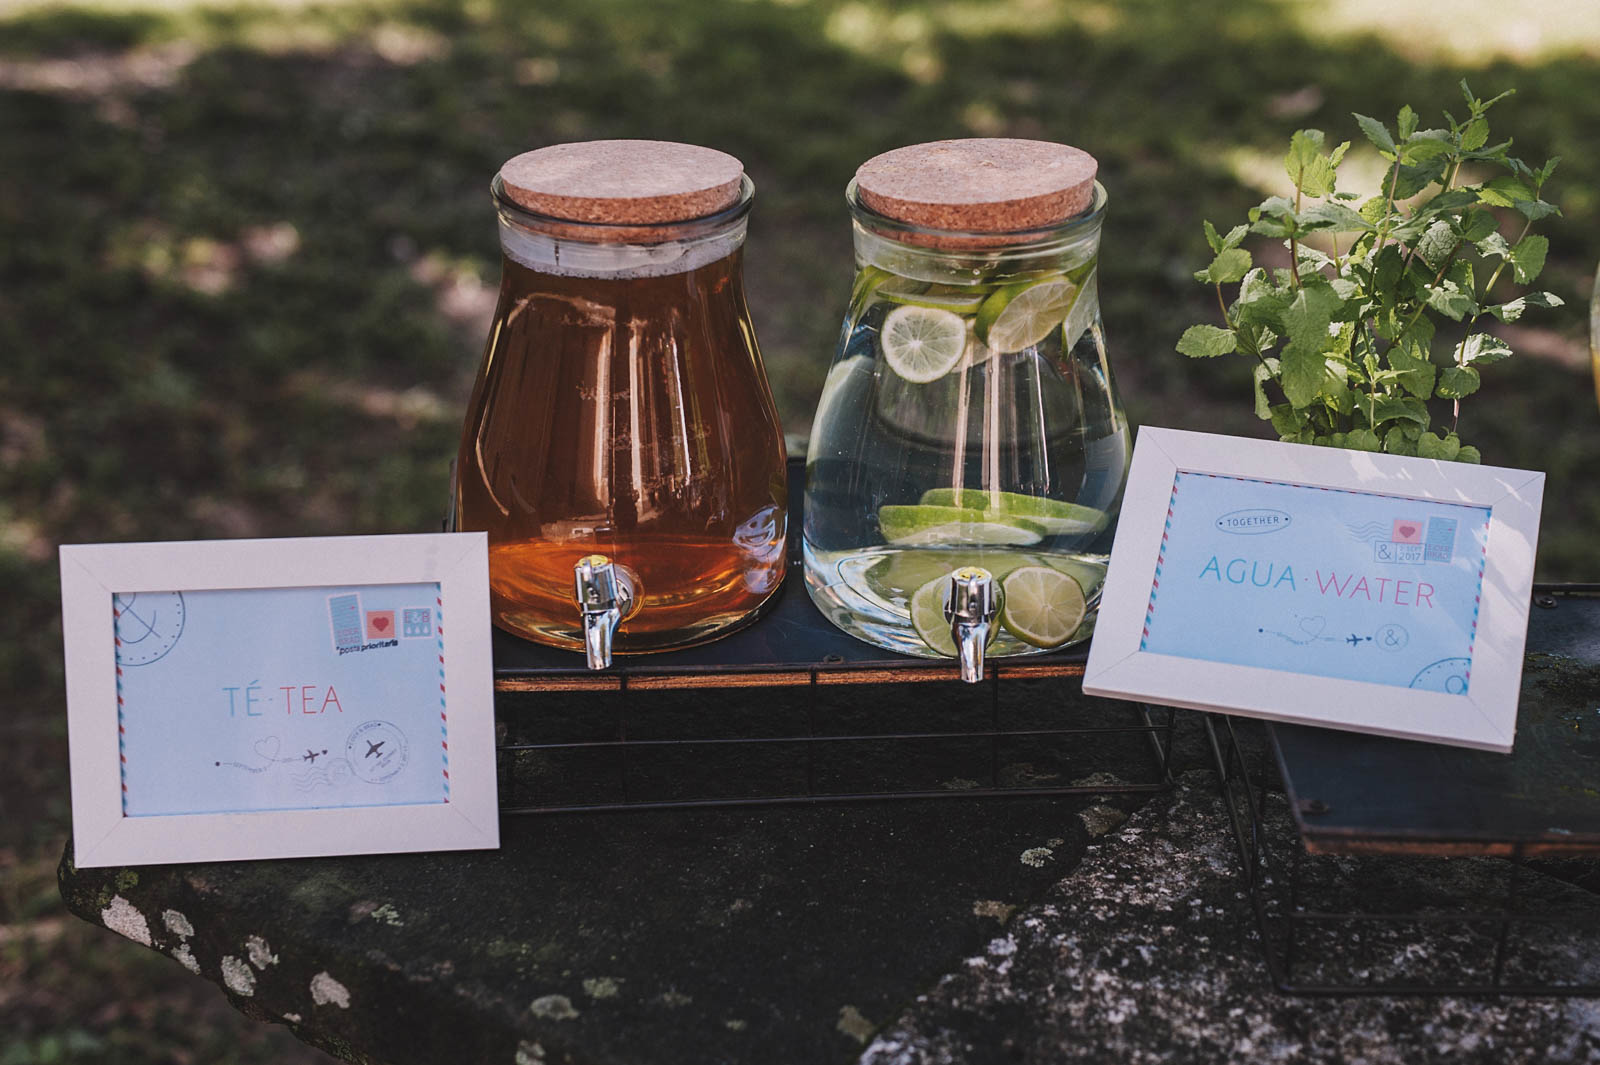 Puesto de limonada, té y agua en la boda de E&B en Garai organizada por Conmemora Wedding Planner